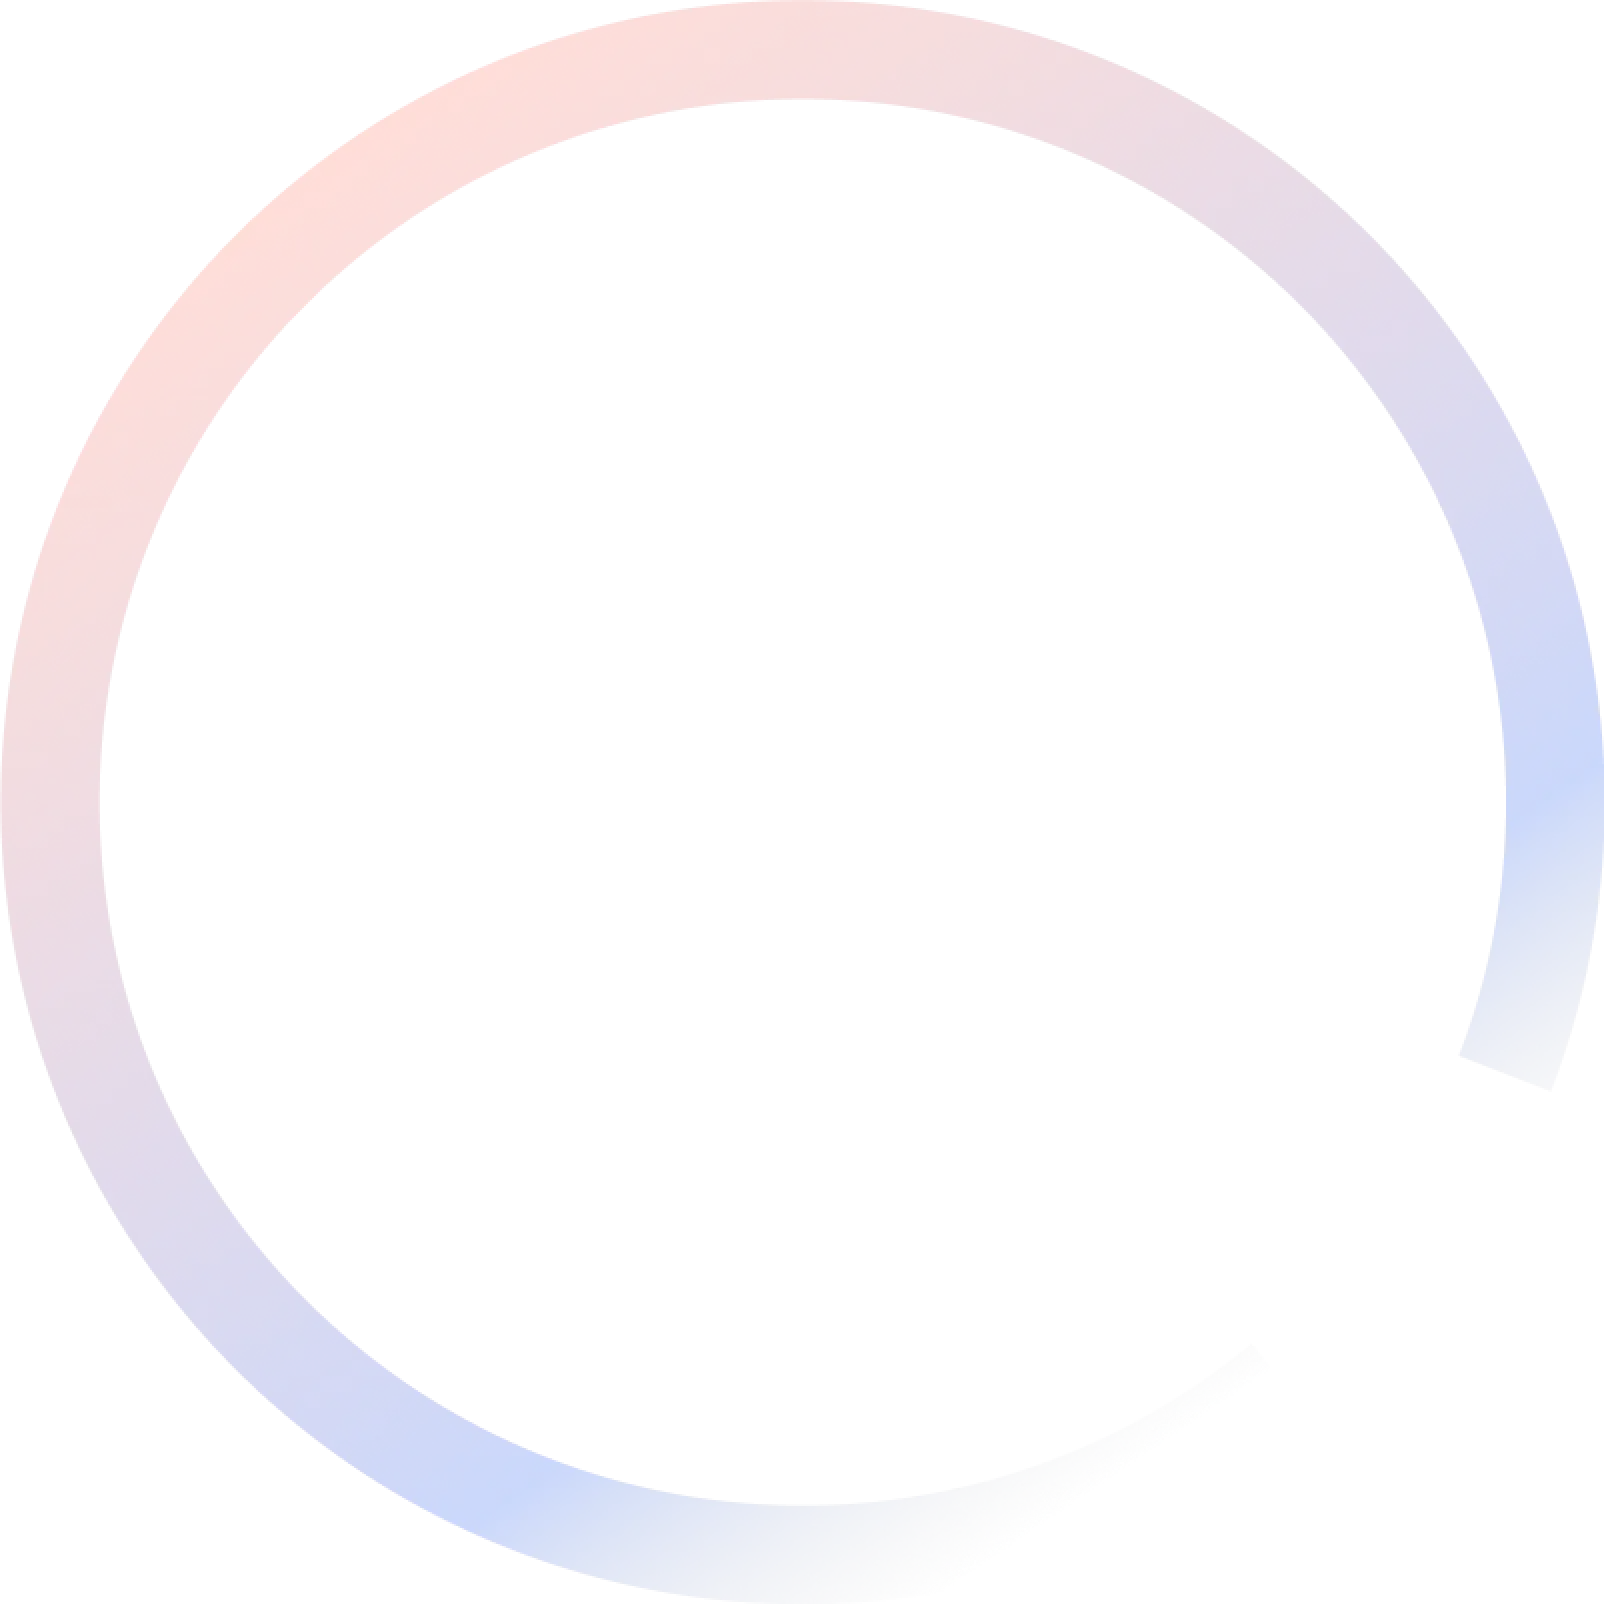 دائرة تتكون من ألوان مختلفة